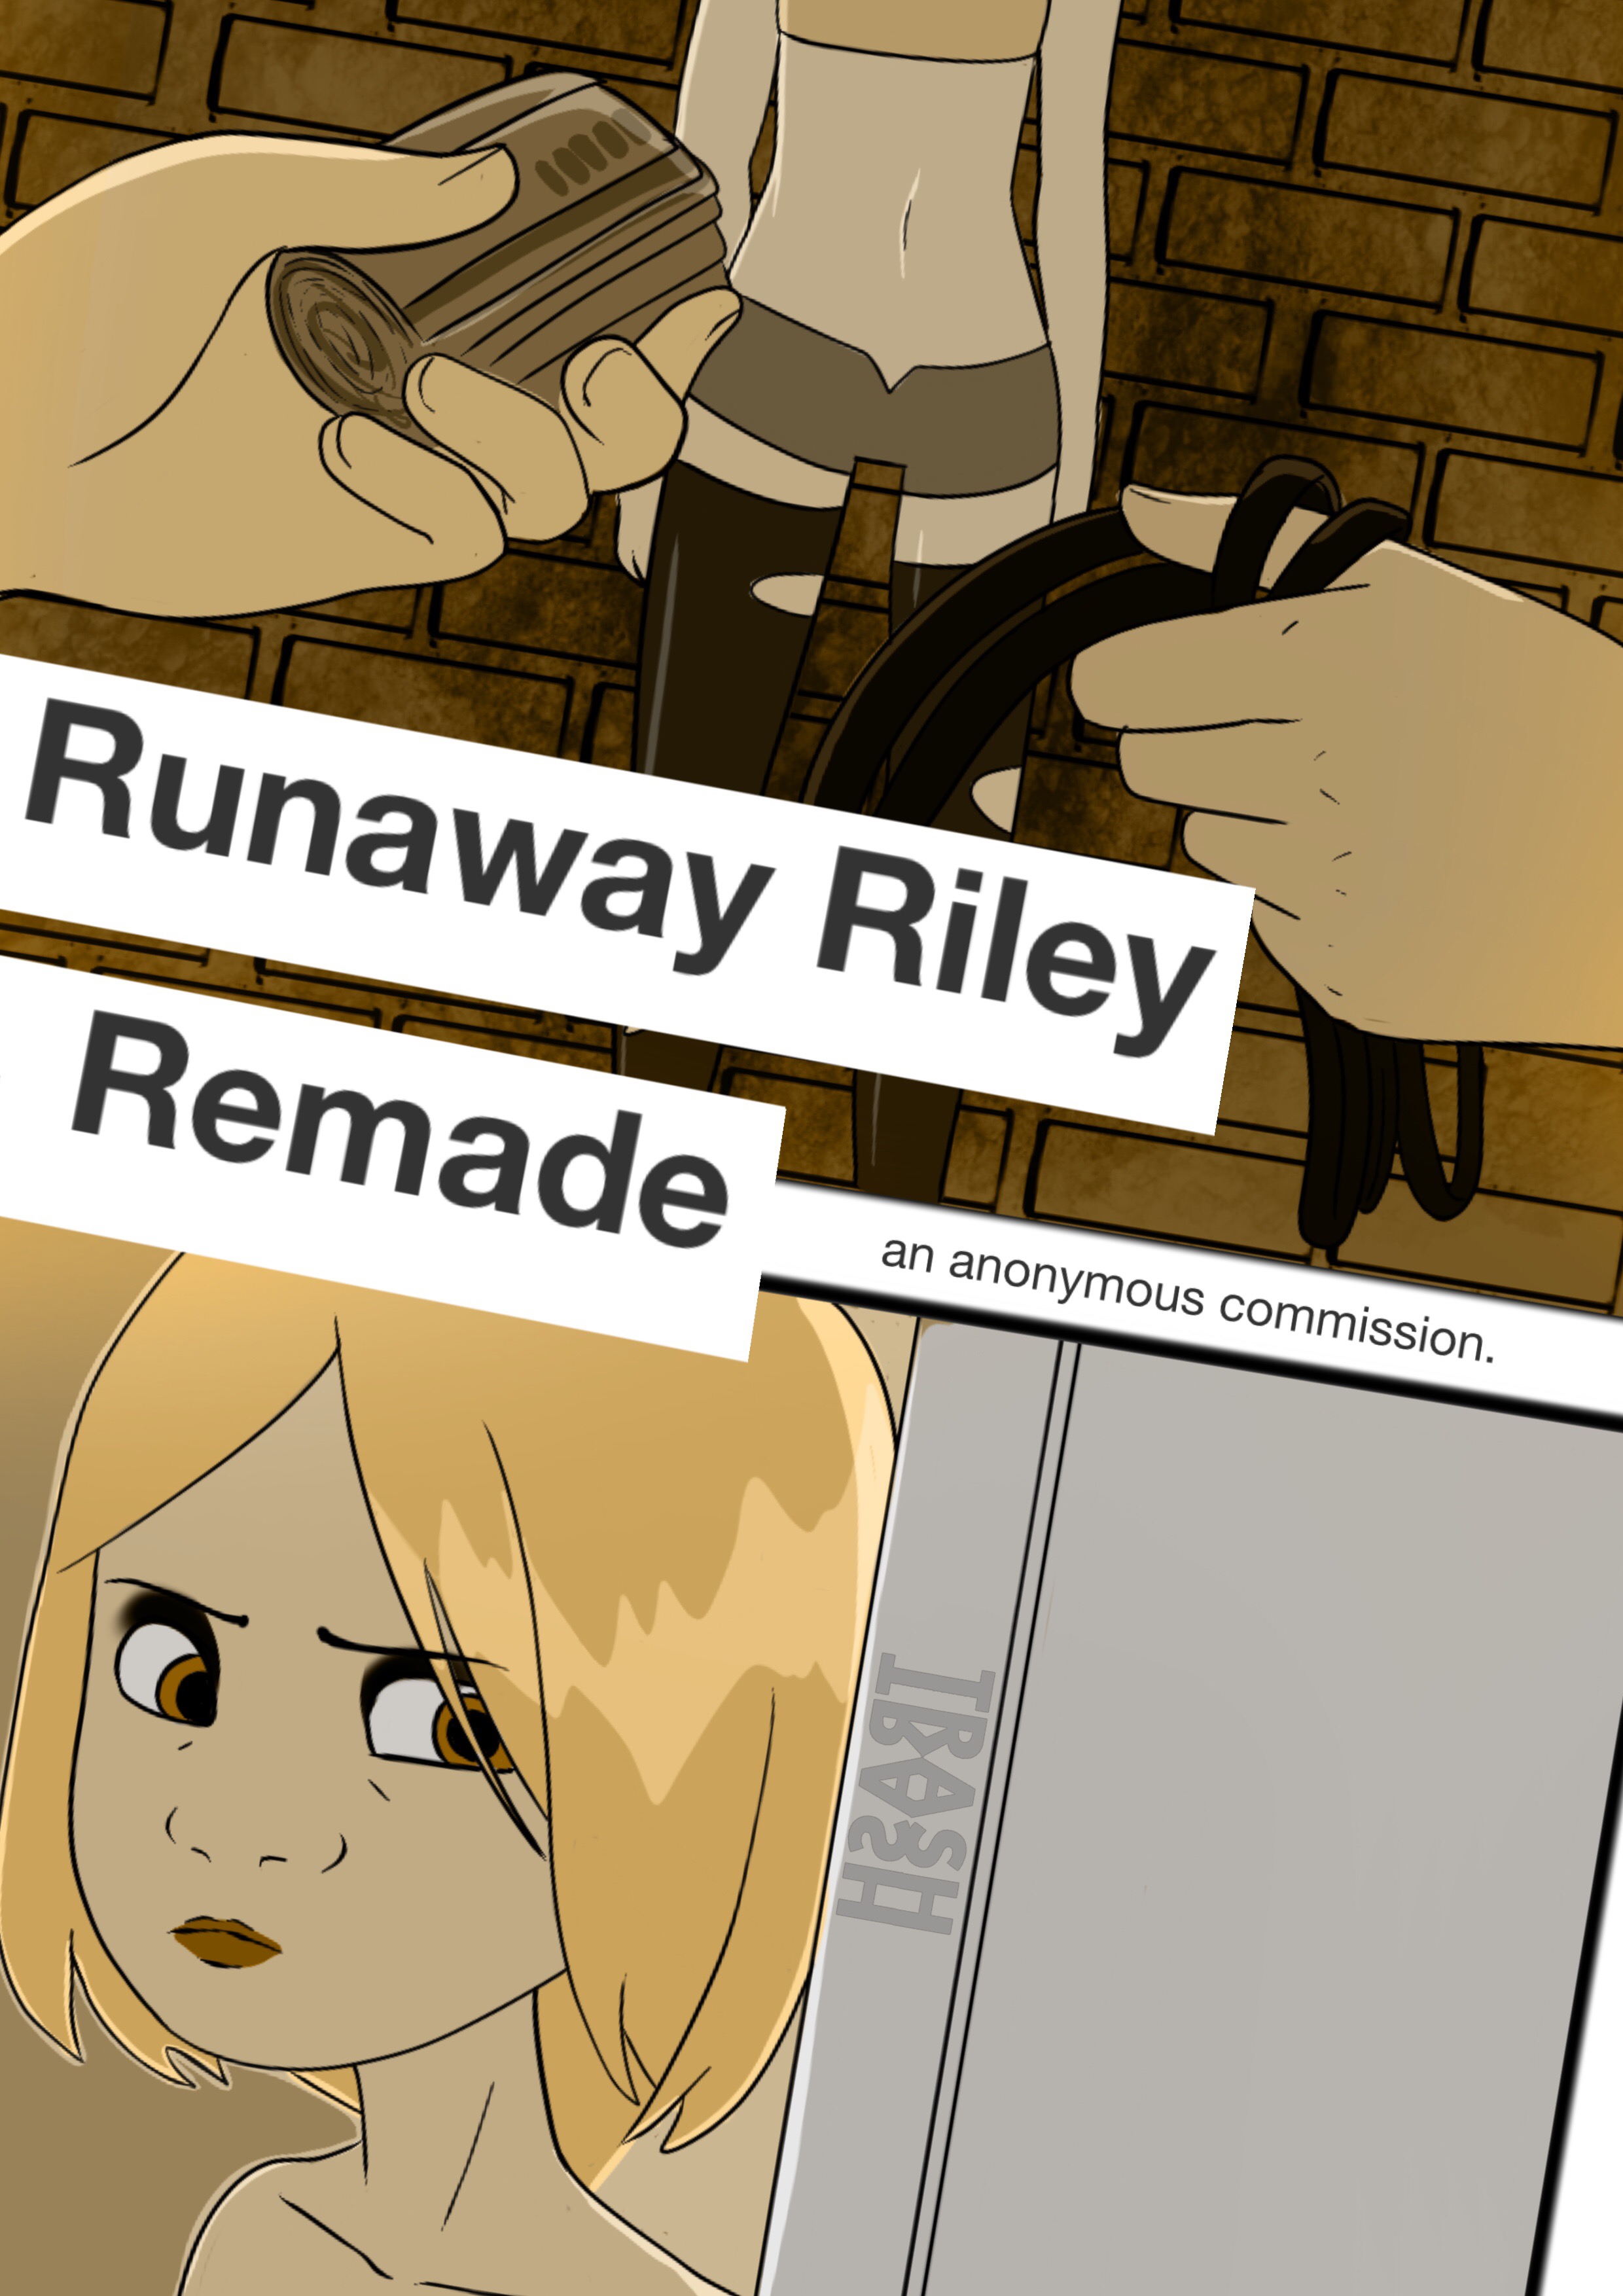 SureFap xxx porno Inside Out - [Trash trash] - Runaway Riley Remade